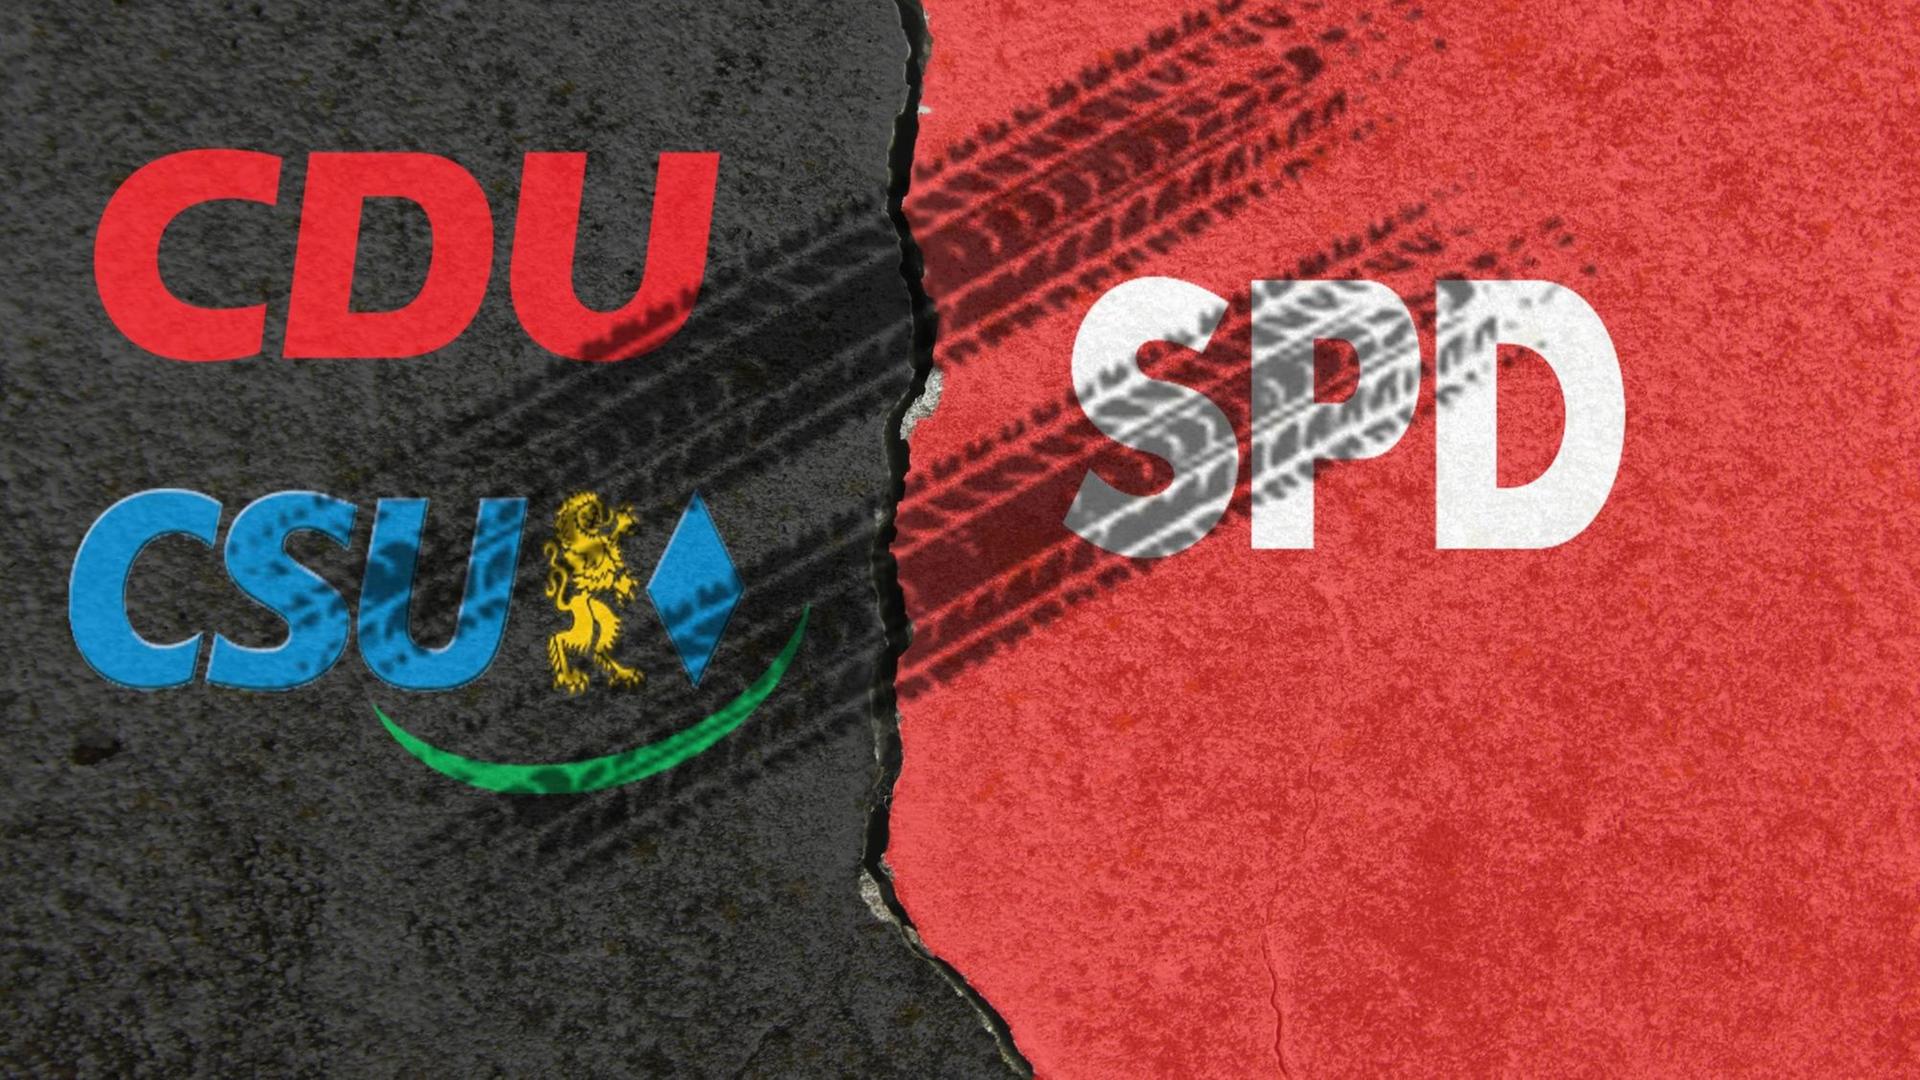 Die Namen der Parteien CDU und CSU auf schwarzem Hintergrund stehen neben dem Namen SPD auf rotem Hintergrund, darüber sind Bremsspuren zu sehen.